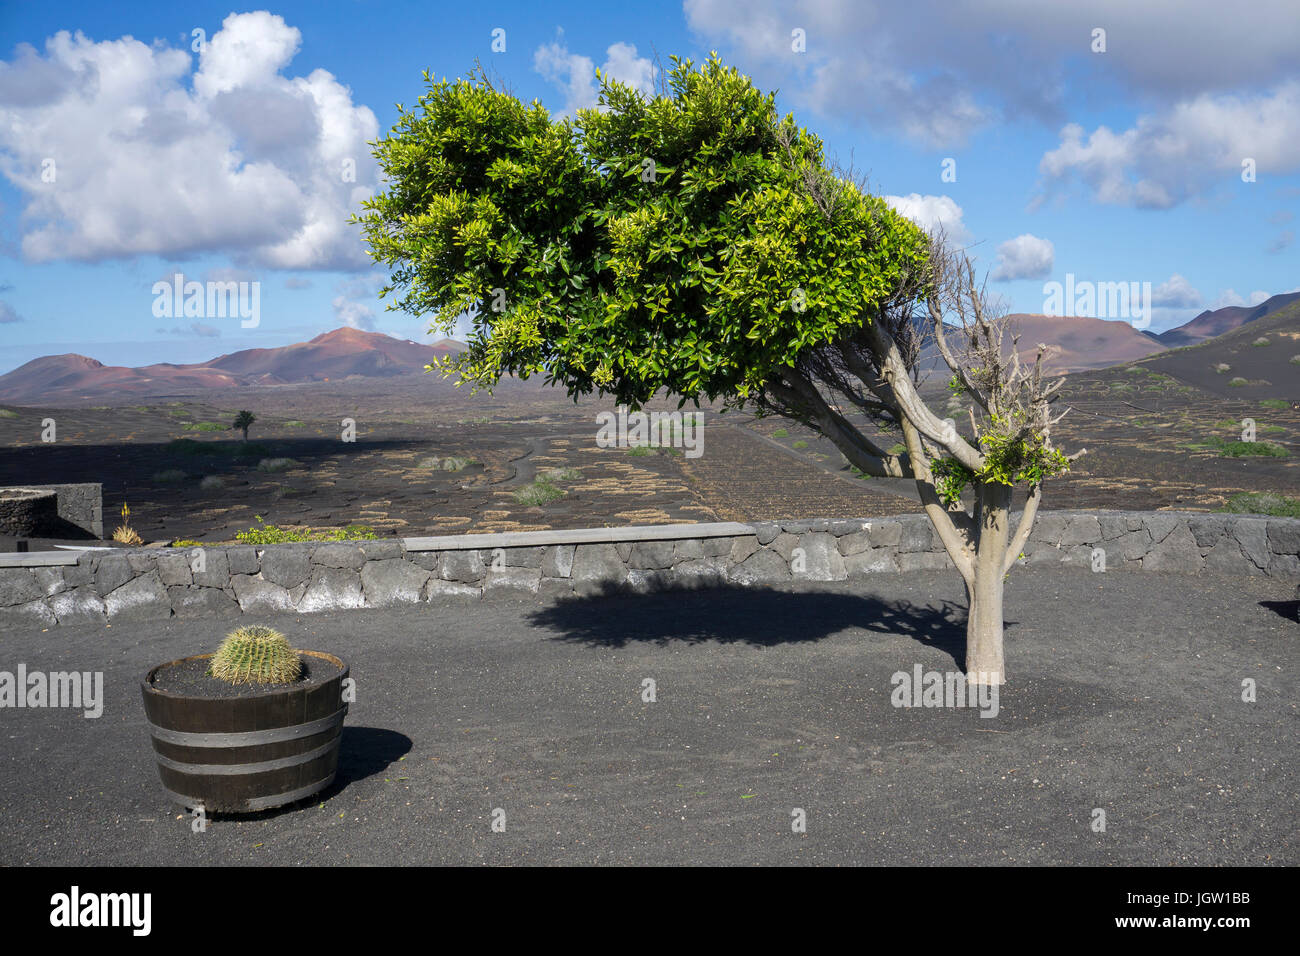 Struttura ad albero formata dal vento a Bodega La Geria, dietro Montanas del Fuego, Lanzarote, Isole canarie, Spagna, Europa Foto Stock